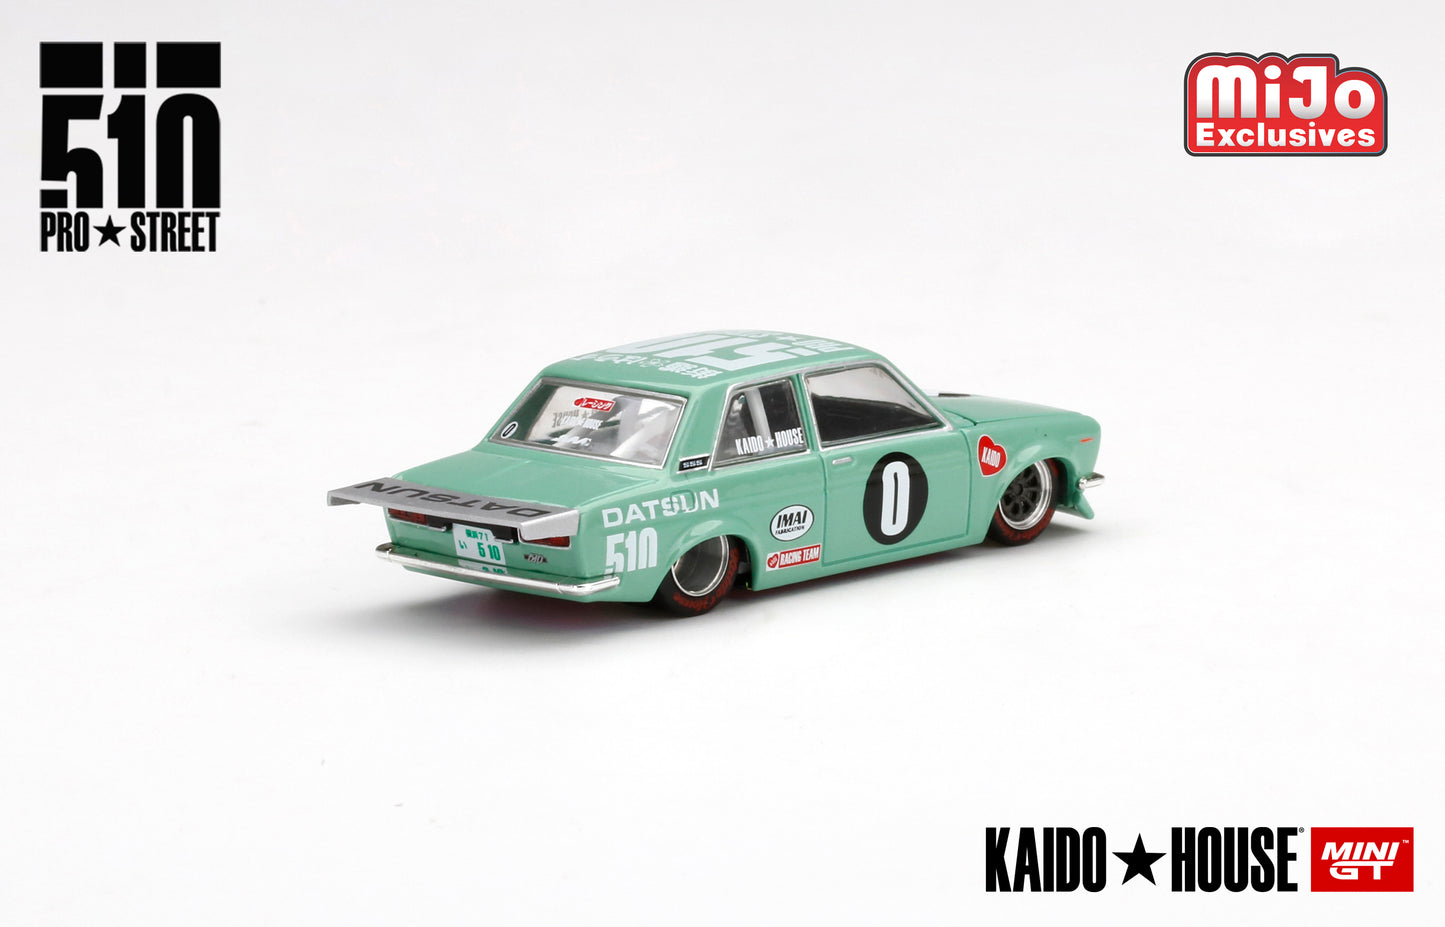 Mini GT Kaido House 008 Datsun 510 Pro Street KDO510 1:64